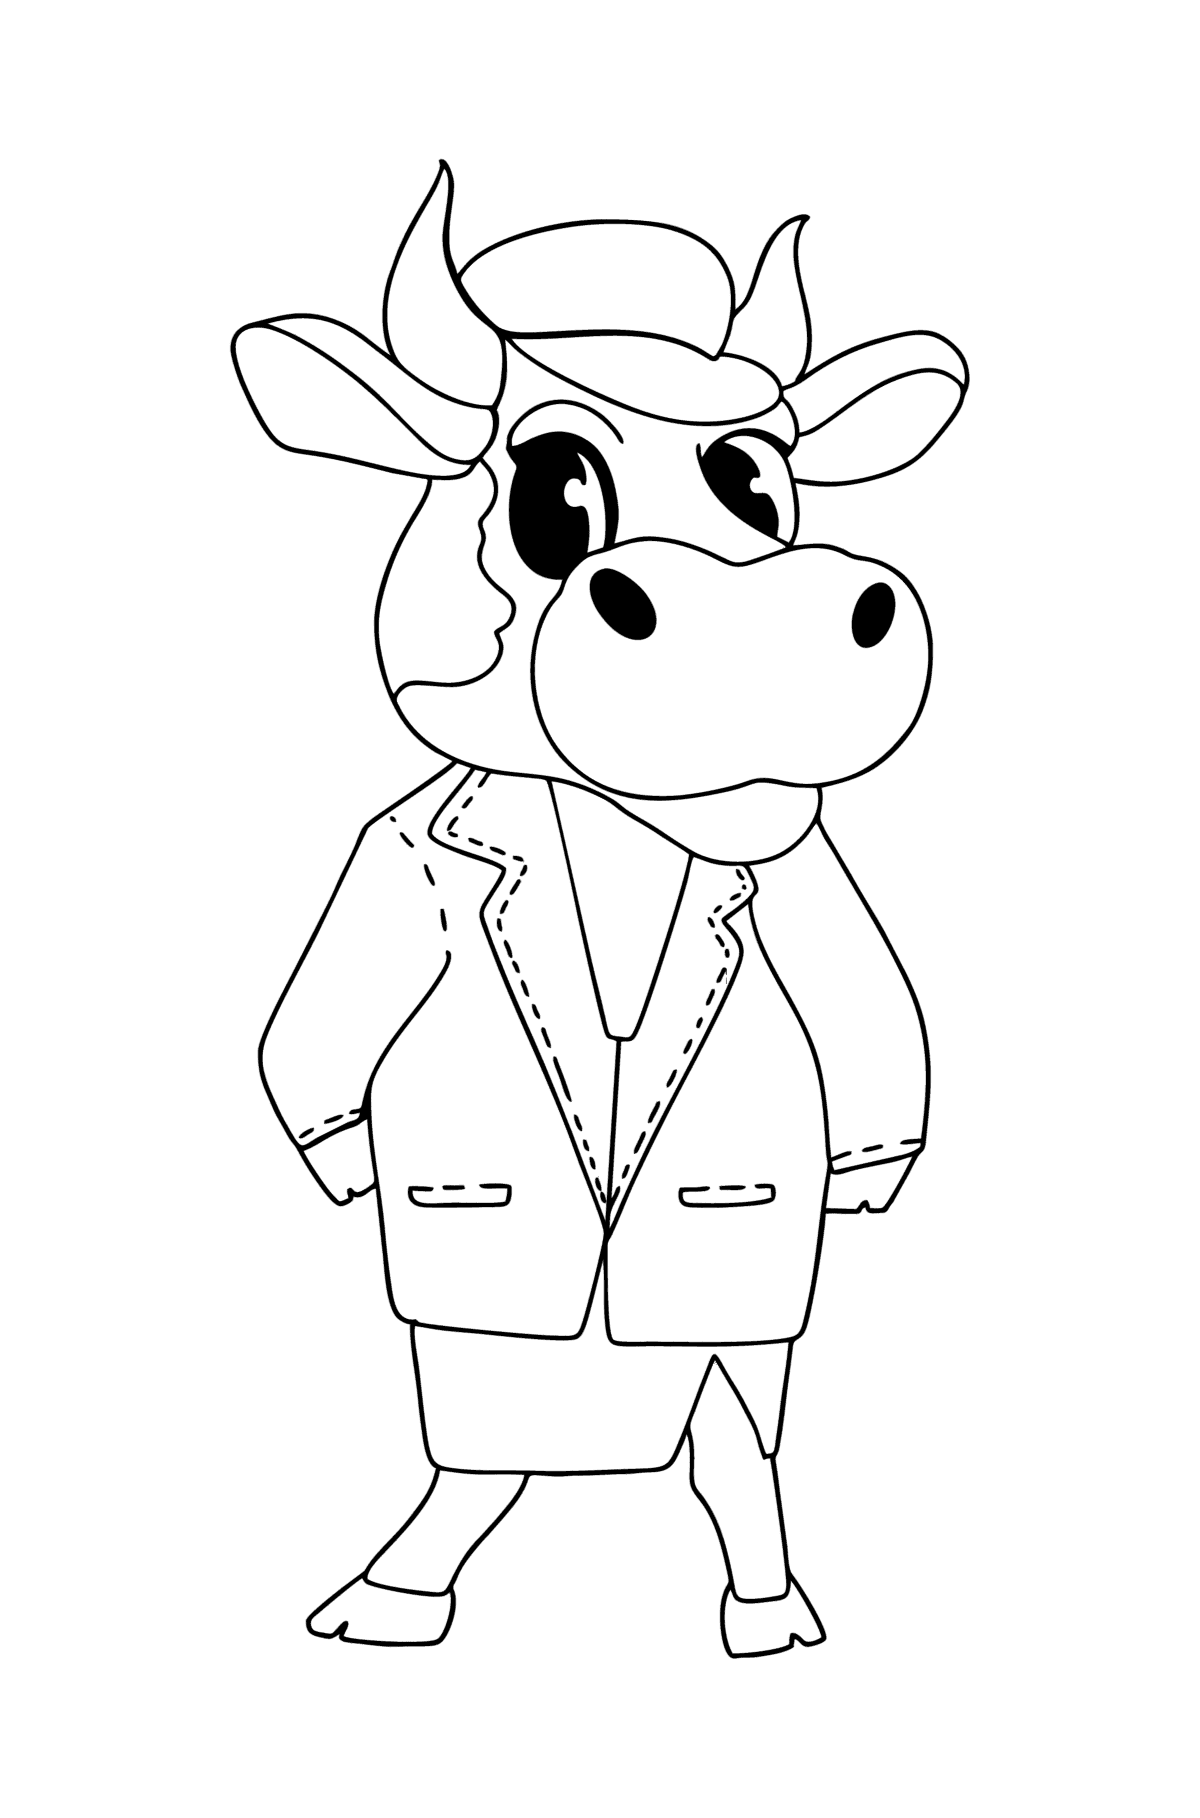 Boyama sayfası karikatürize et, inek - Boyamalar çocuklar için